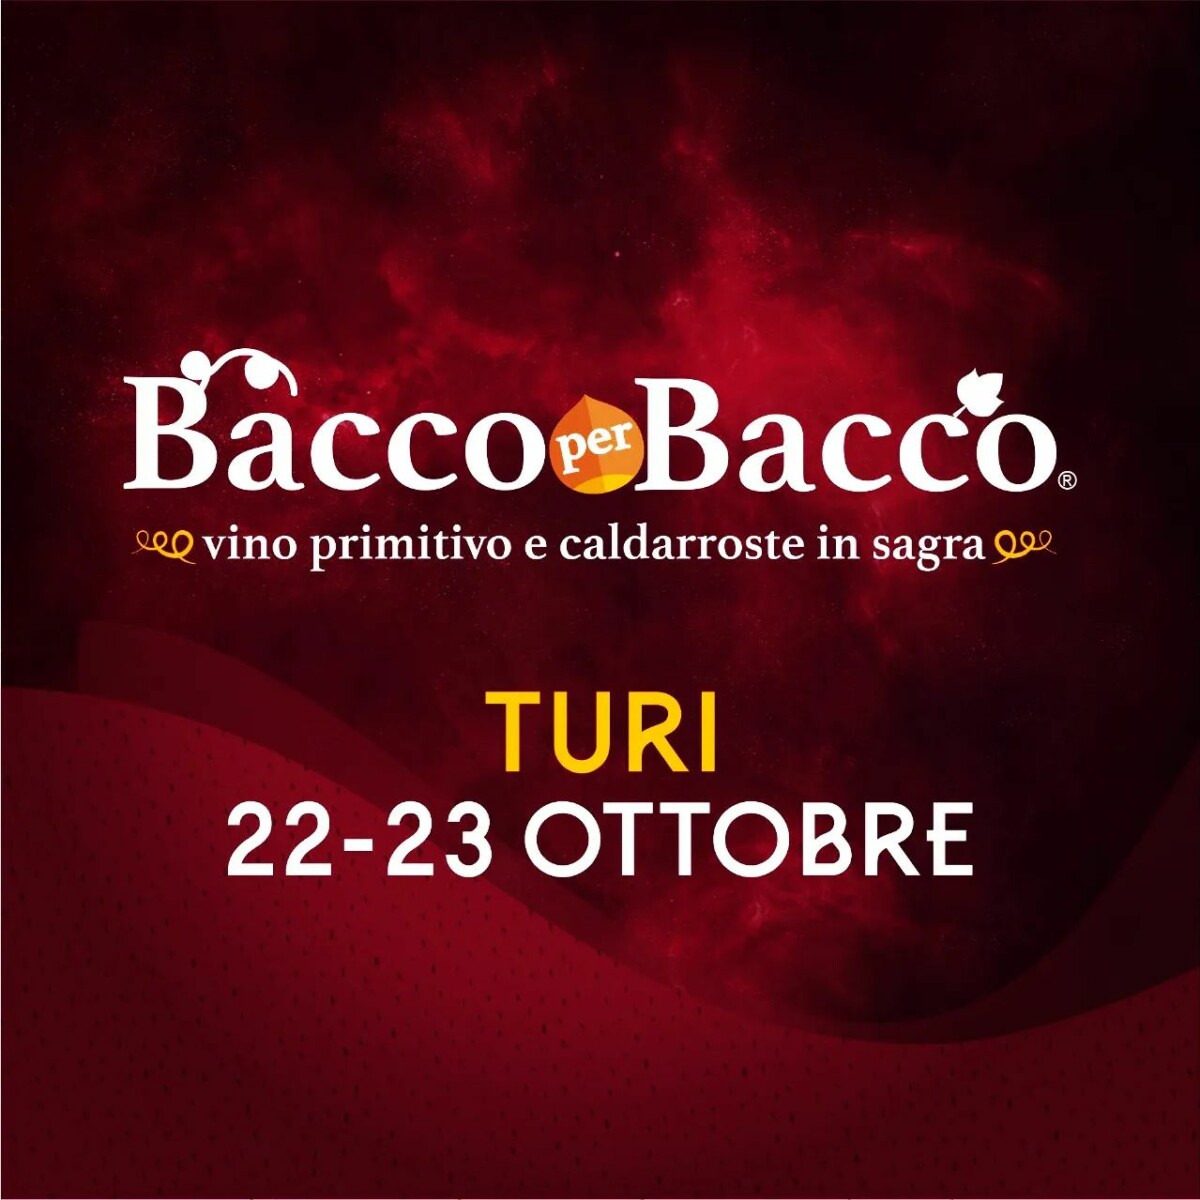 Al momento stai visualizzando Sagra del vino novello in Puglia: Bacco per Bacco a Turi